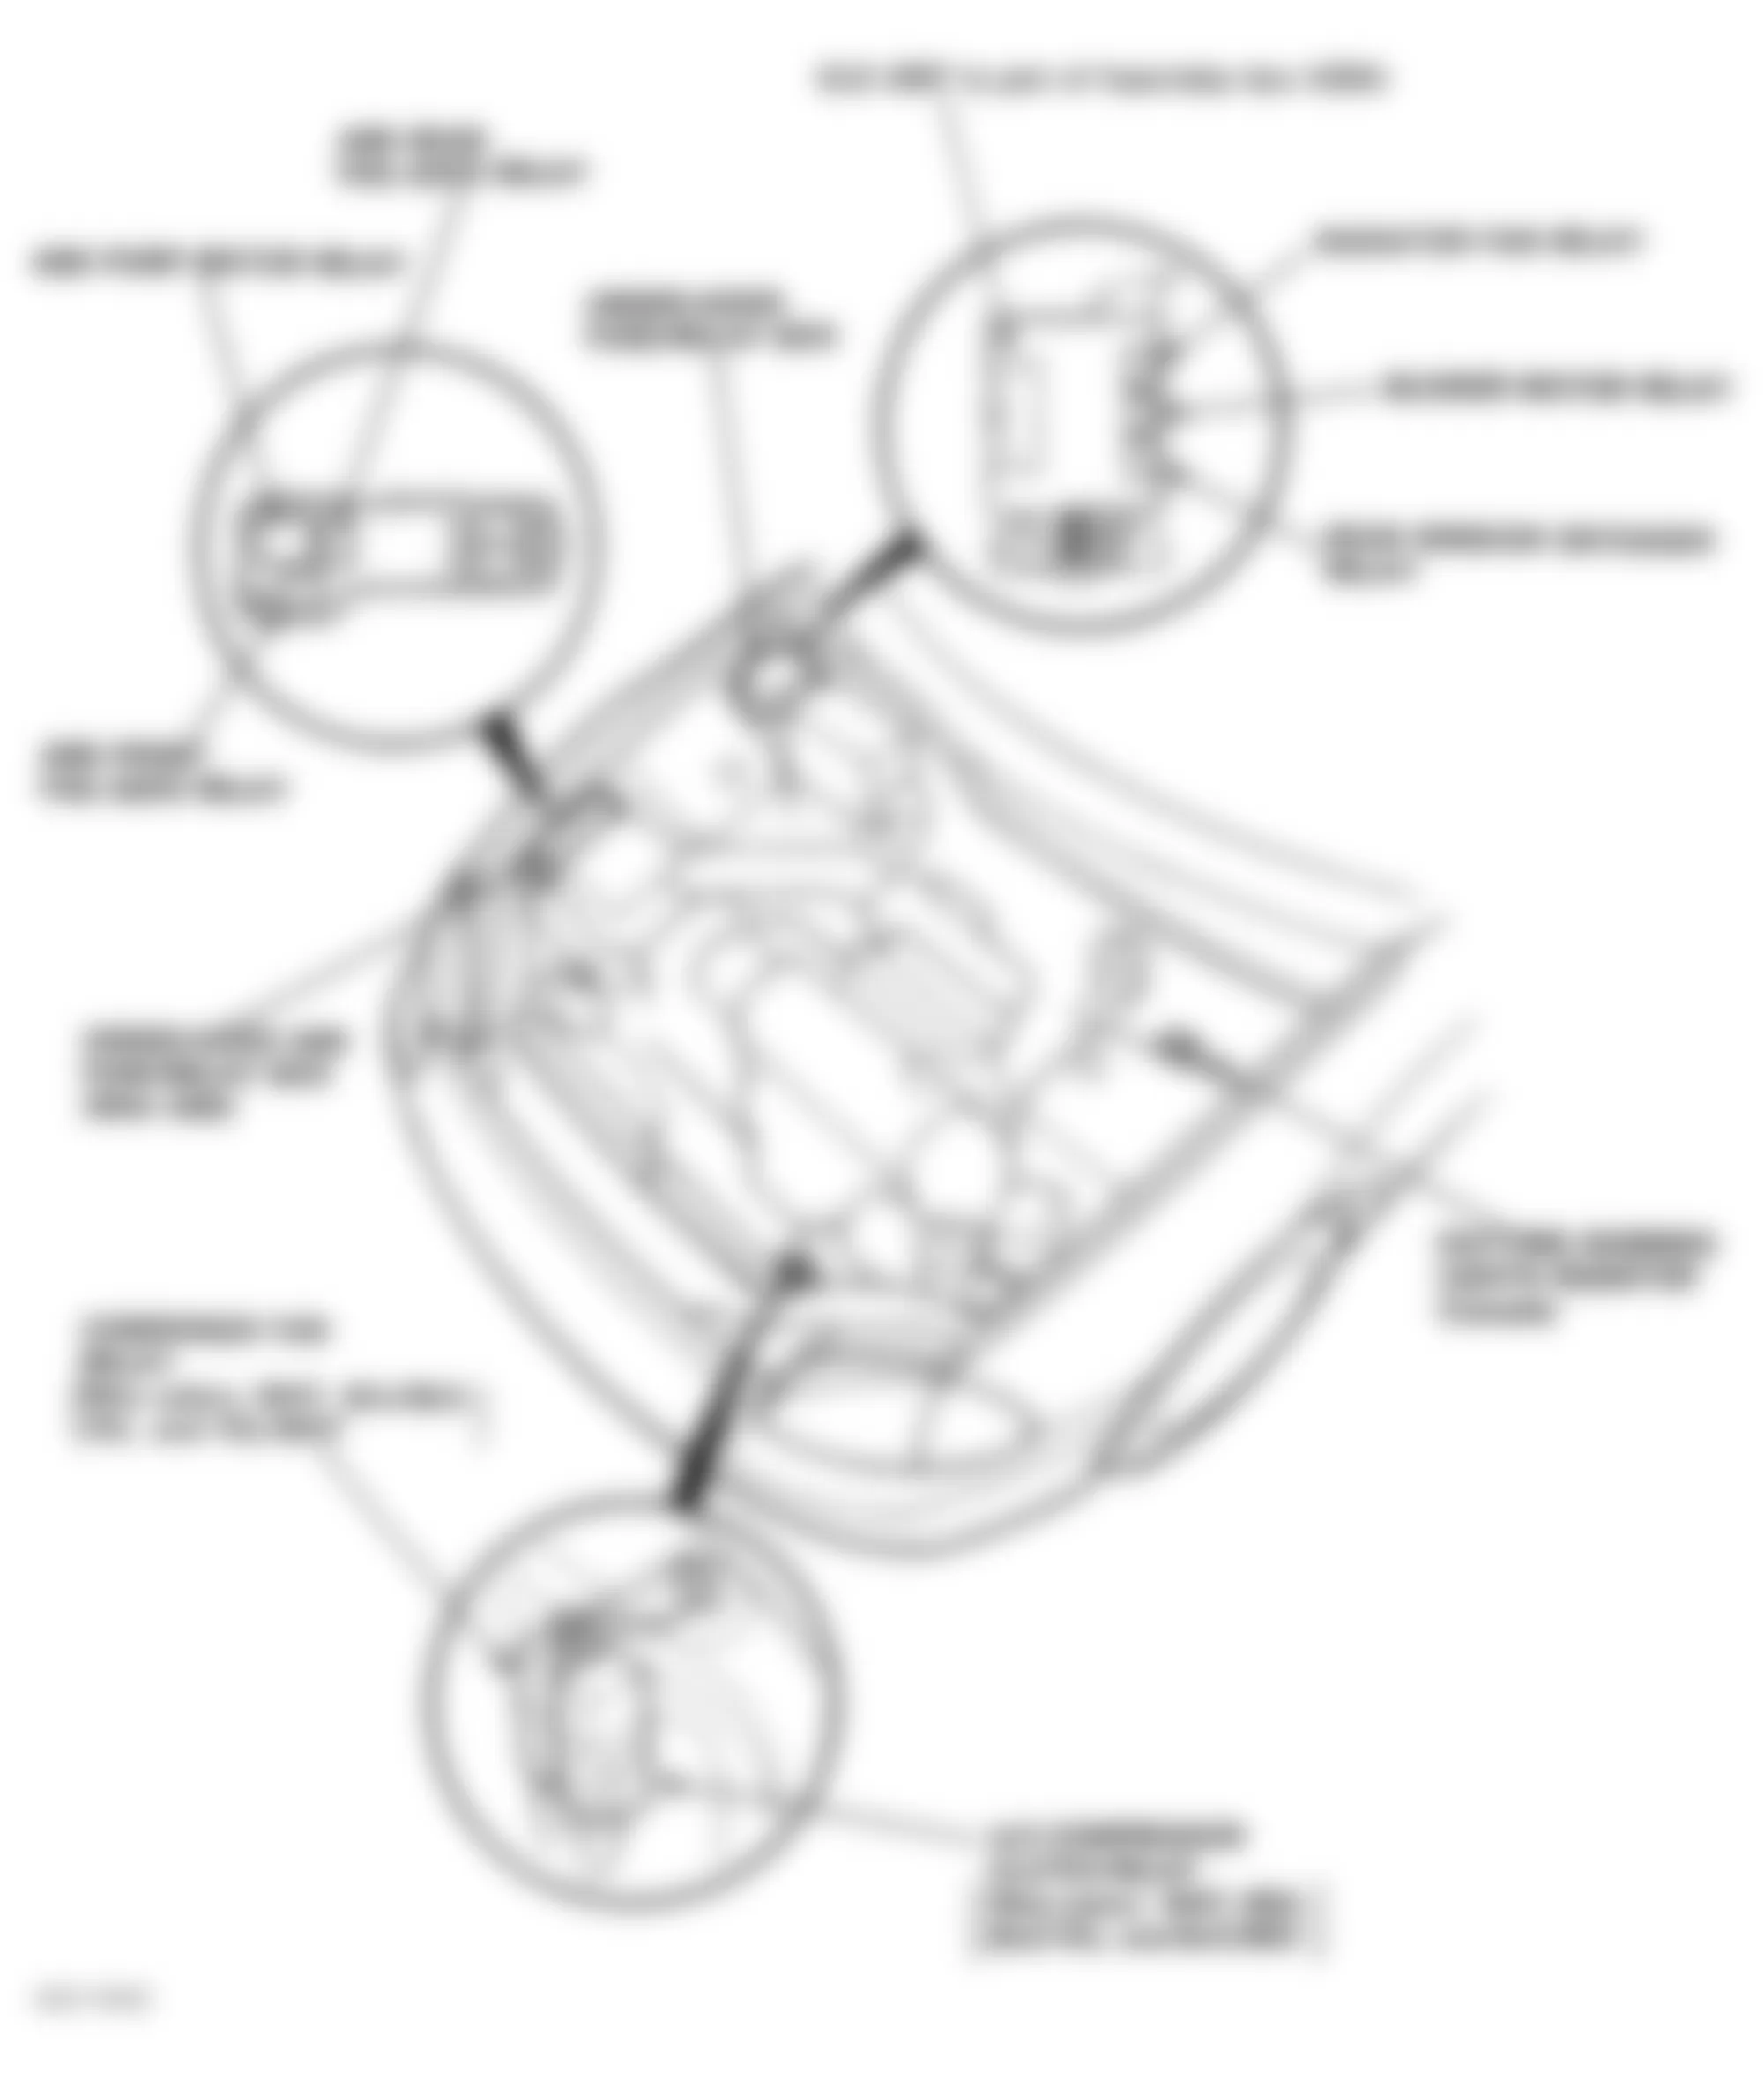 Honda Civic del Sol VTEC 1996 - Component Locations -  Locating Under-Hood ABS Fuse/Relay Box